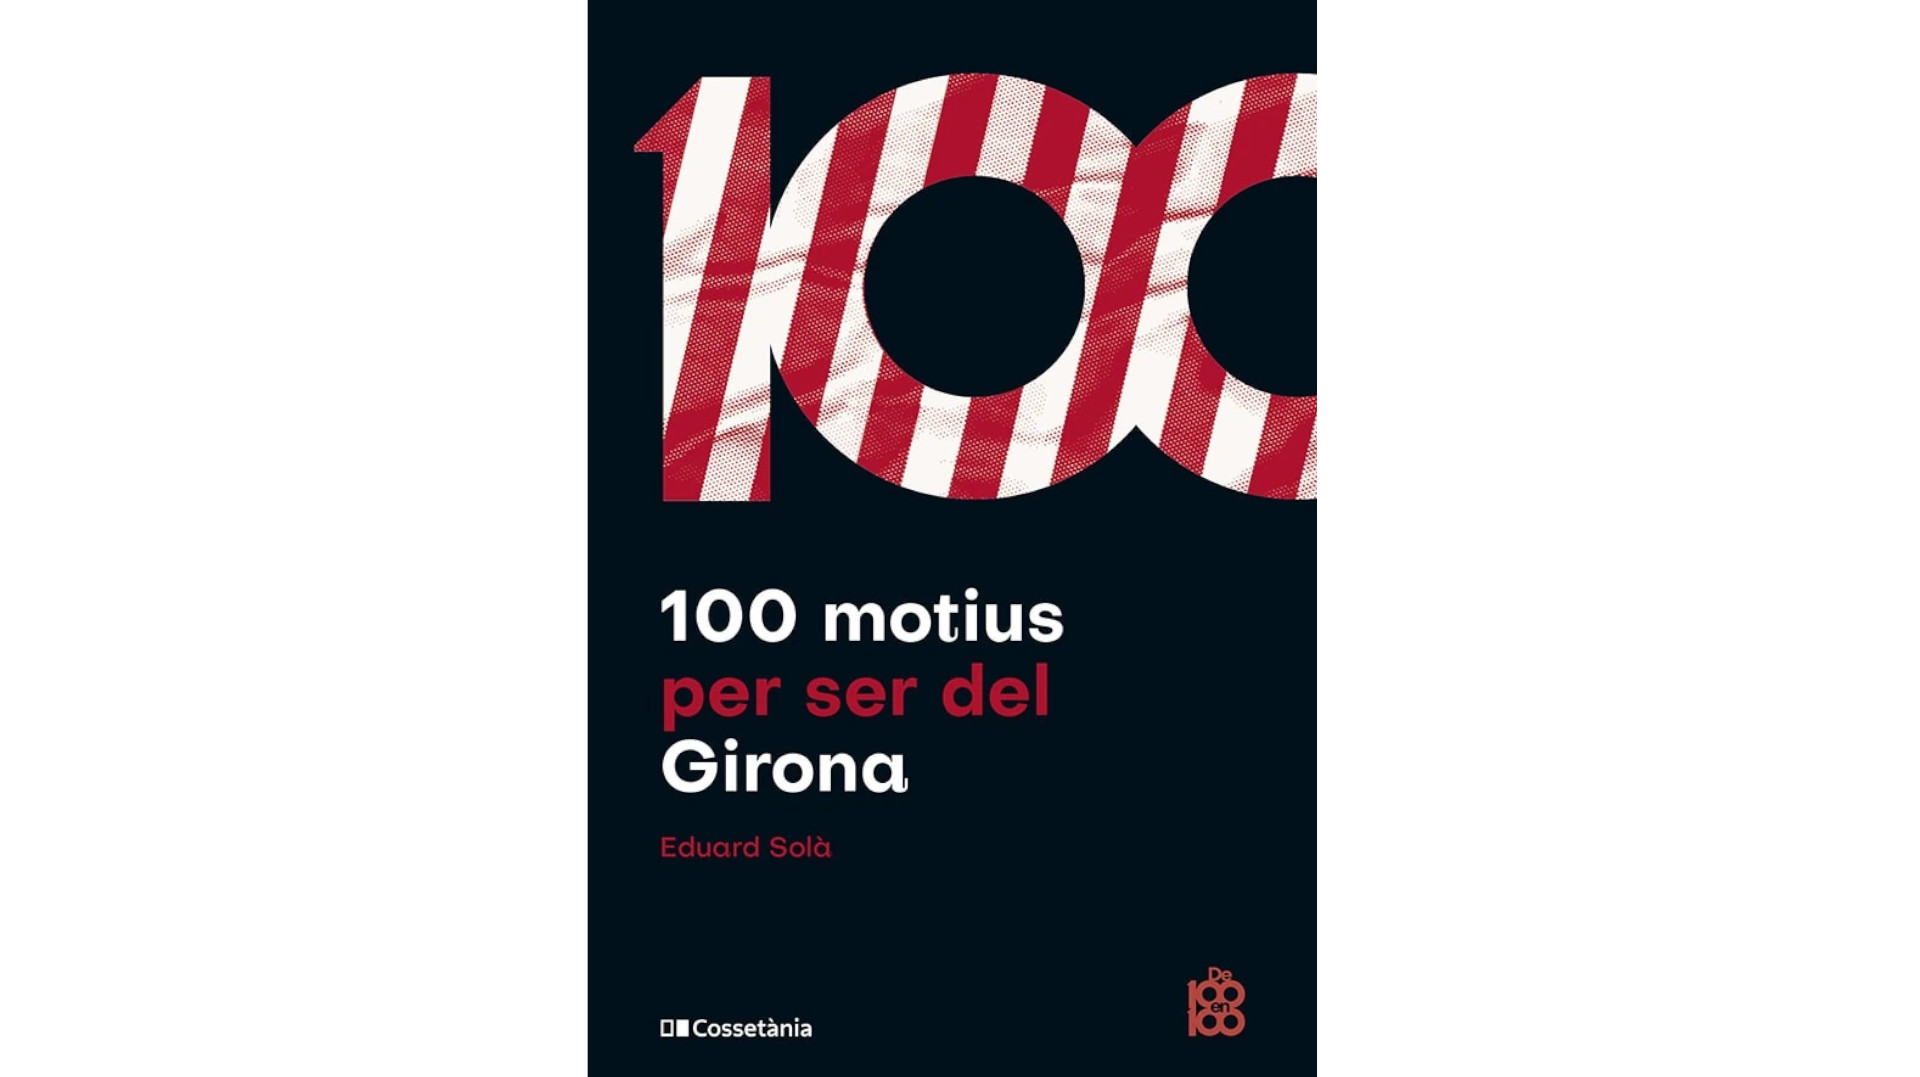 Presentació del llibre “100 motius per ser del Girona”